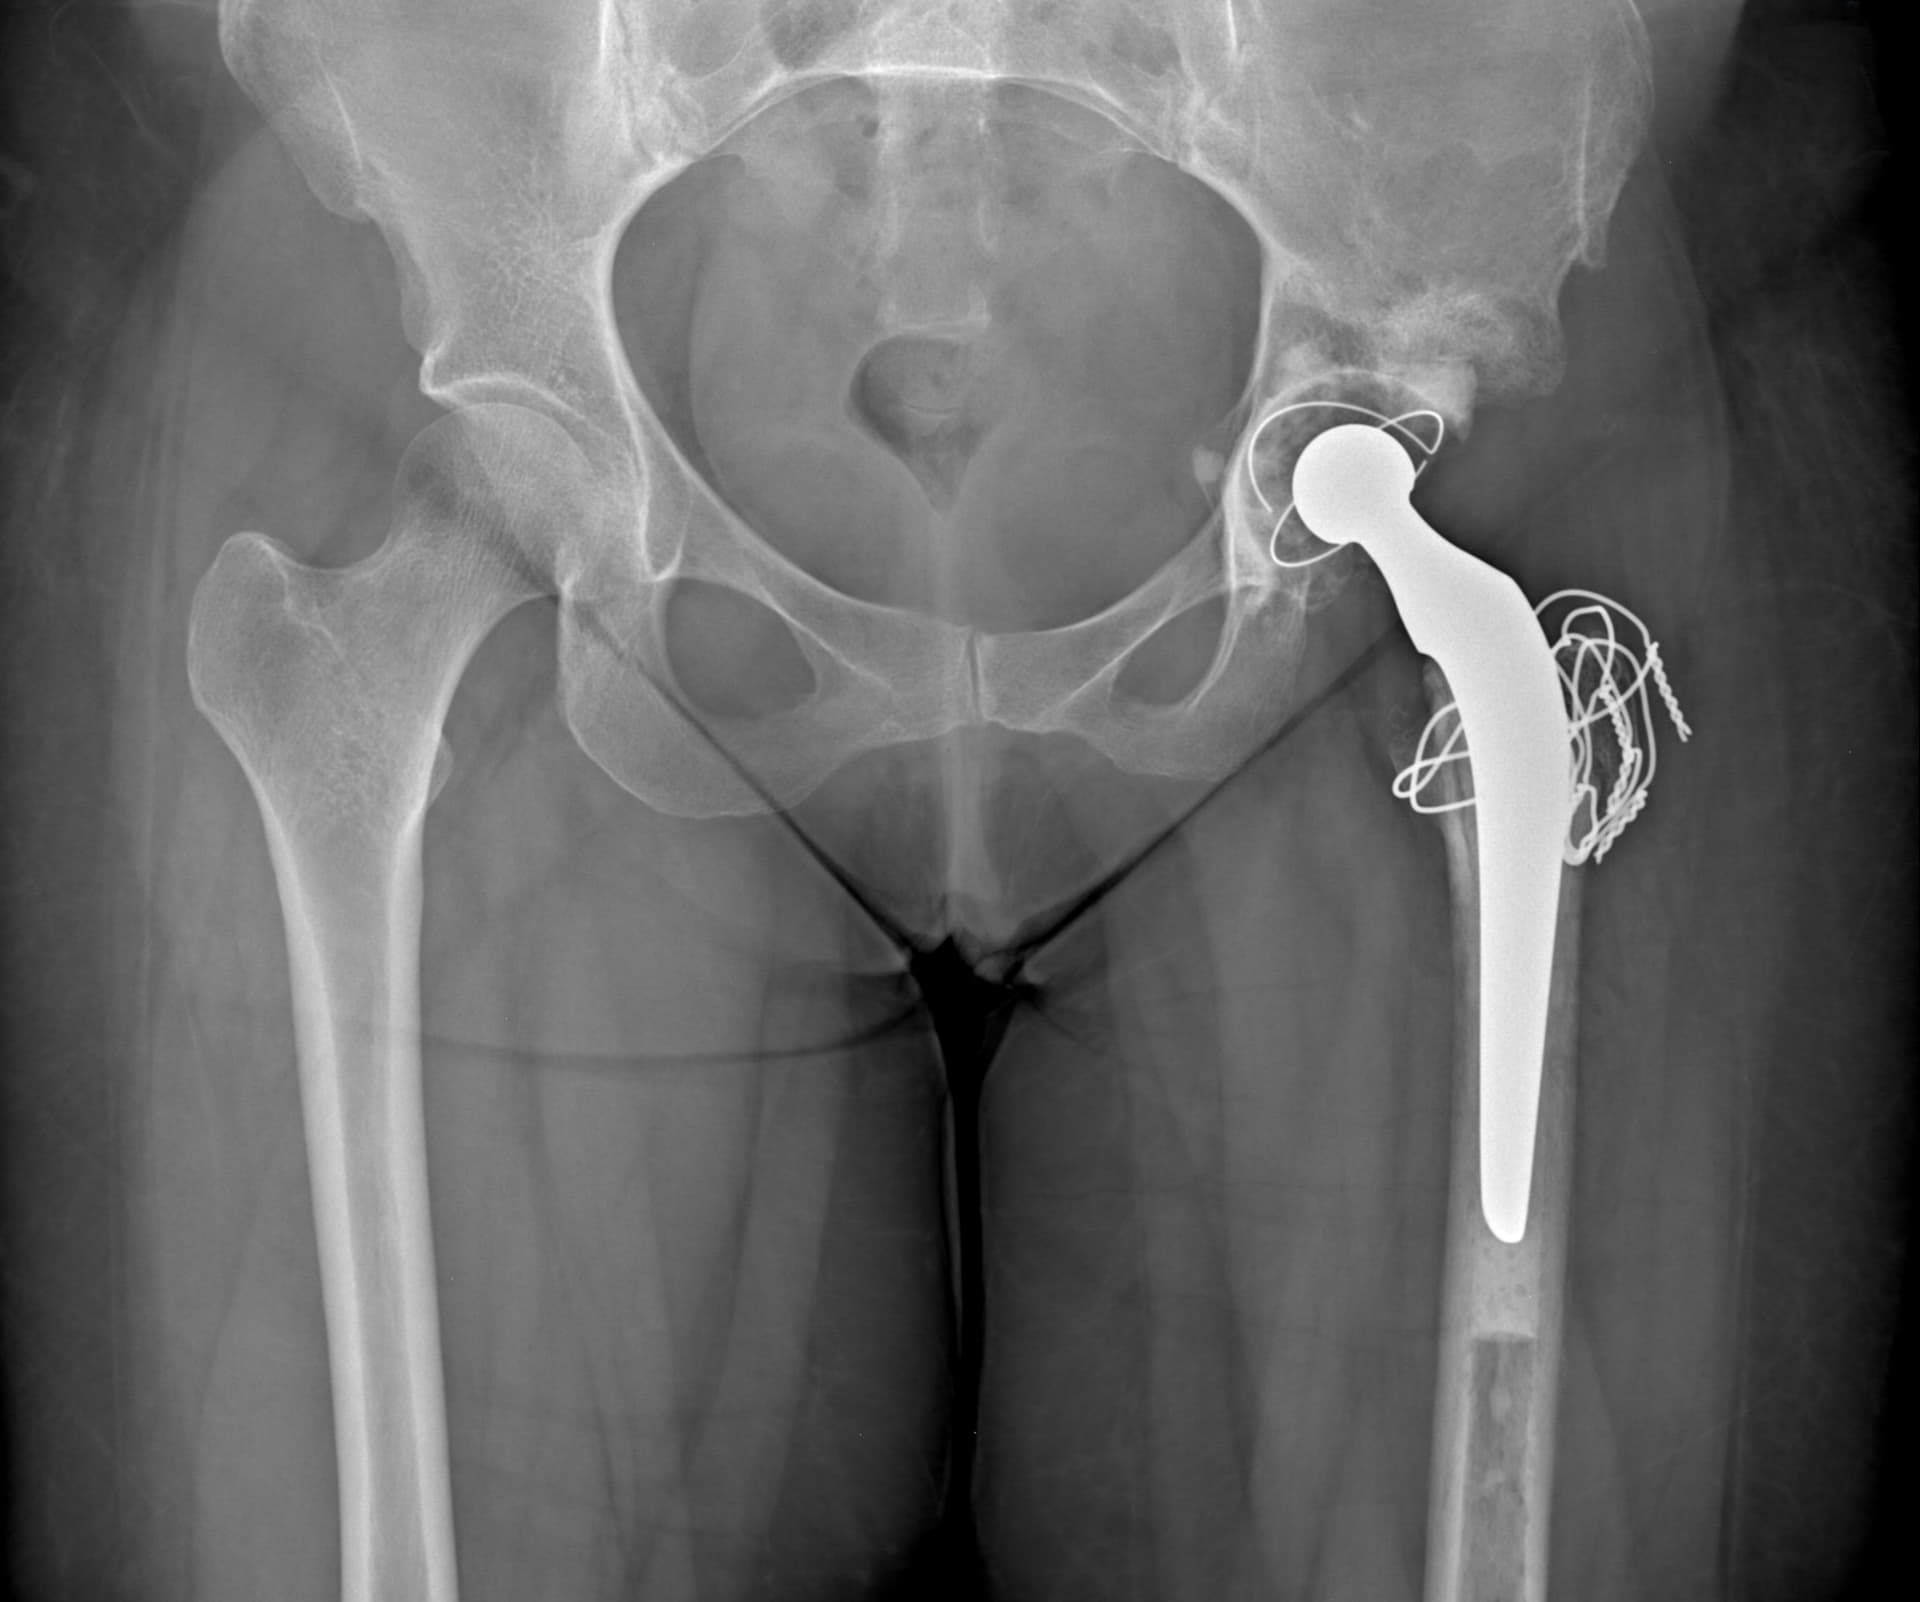 Radiographie post opératoire: pose d'une prothèse totale de hanche gauche par voie transtrochantérienne (trochantérotomie) selon la technique de Cochin permettant la récupération de la longueur du membre (isolongs).